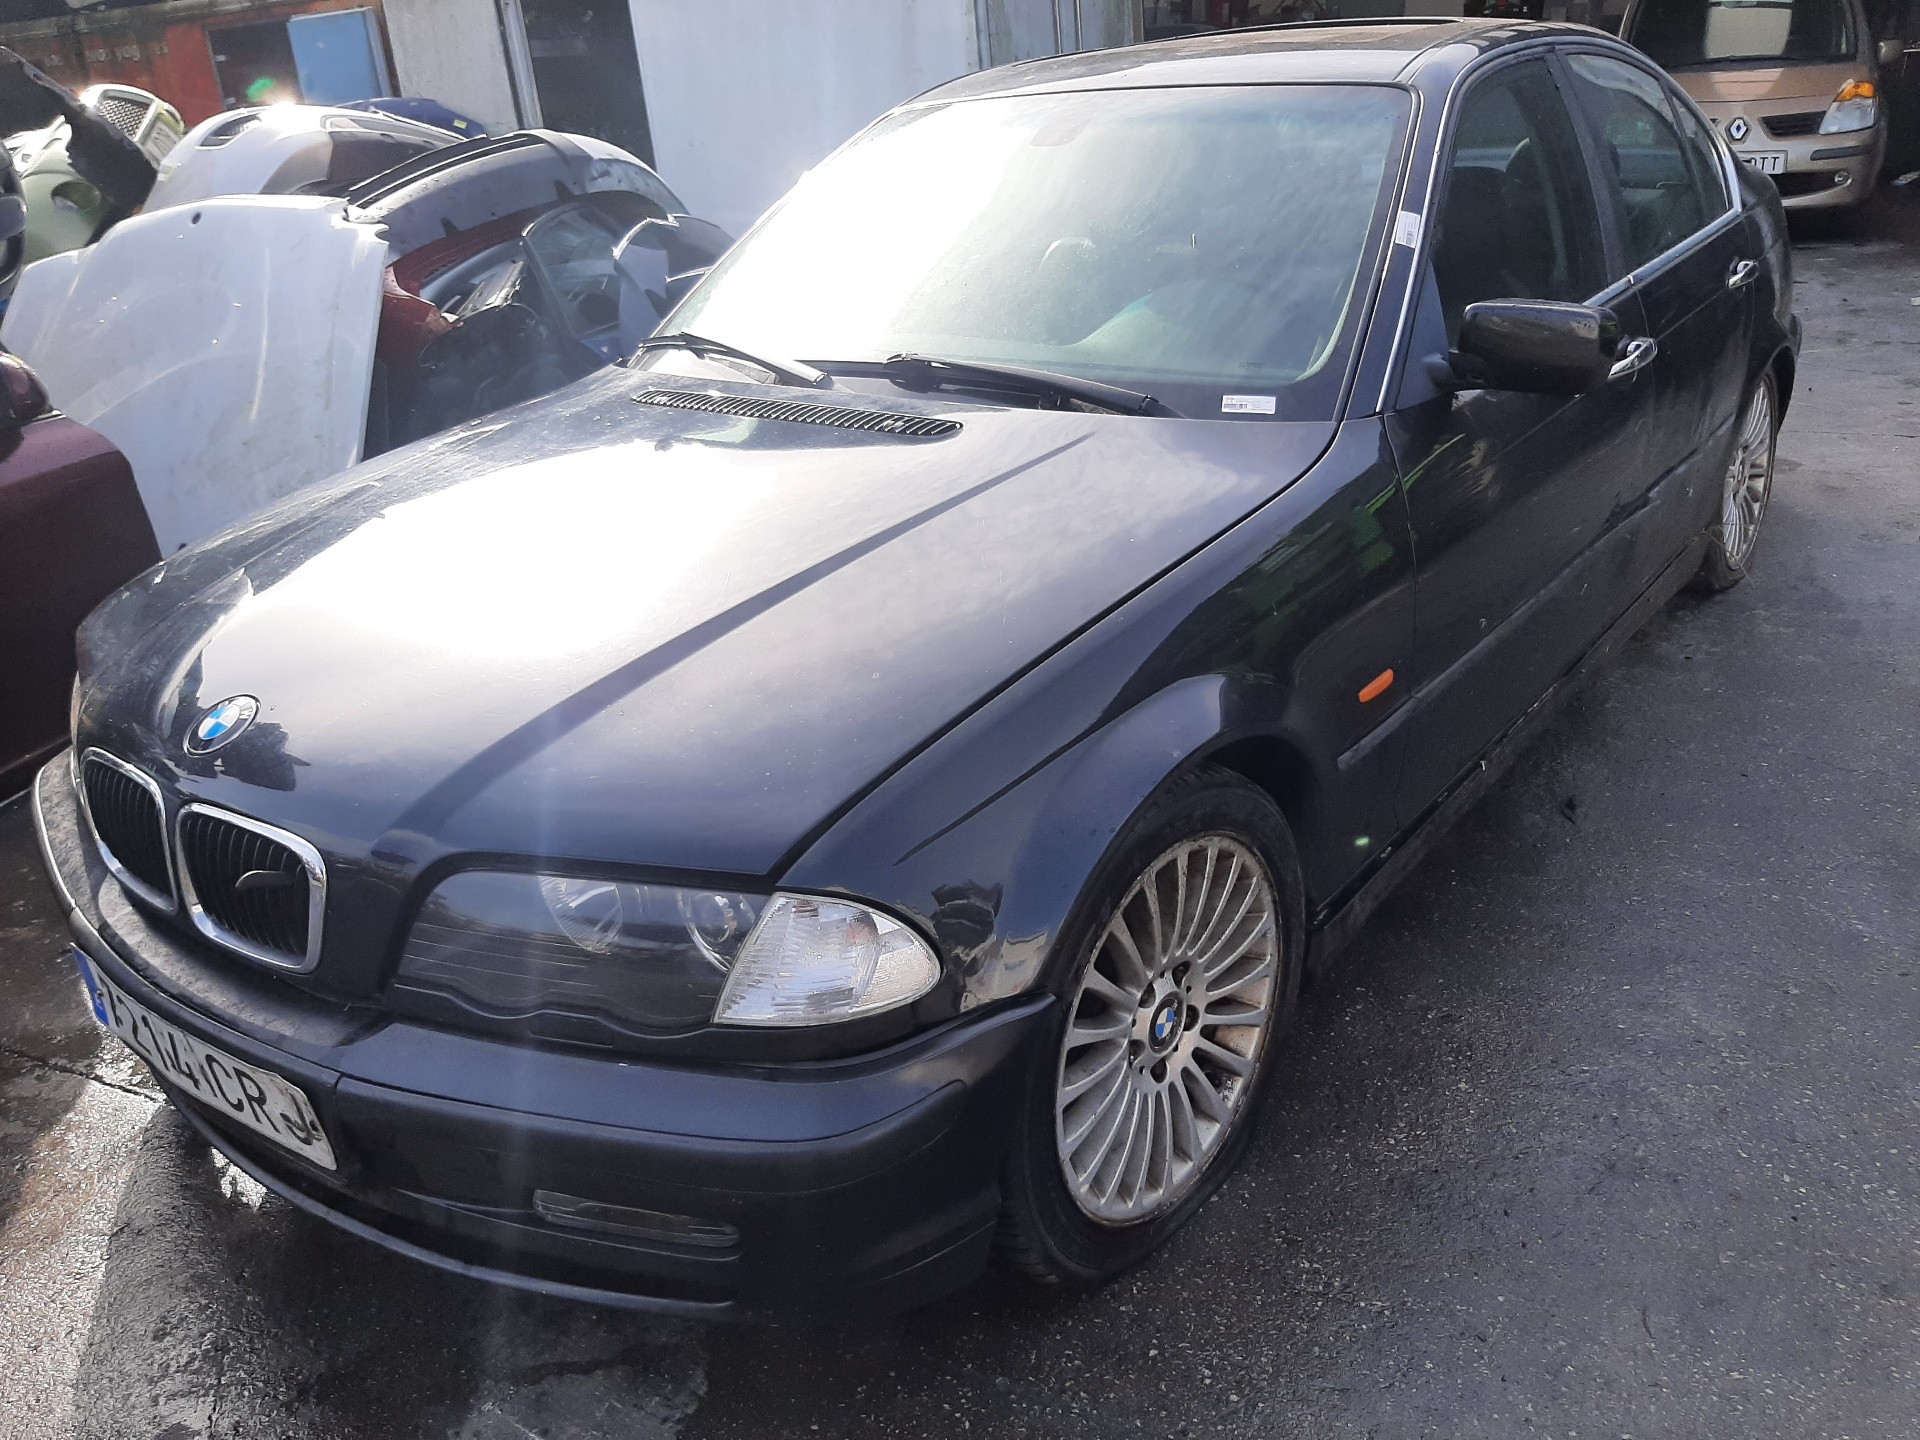 BMW 3 Series E46 (1997-2006) Muzikos grotuvas be navigacijos 65128383686 24028045